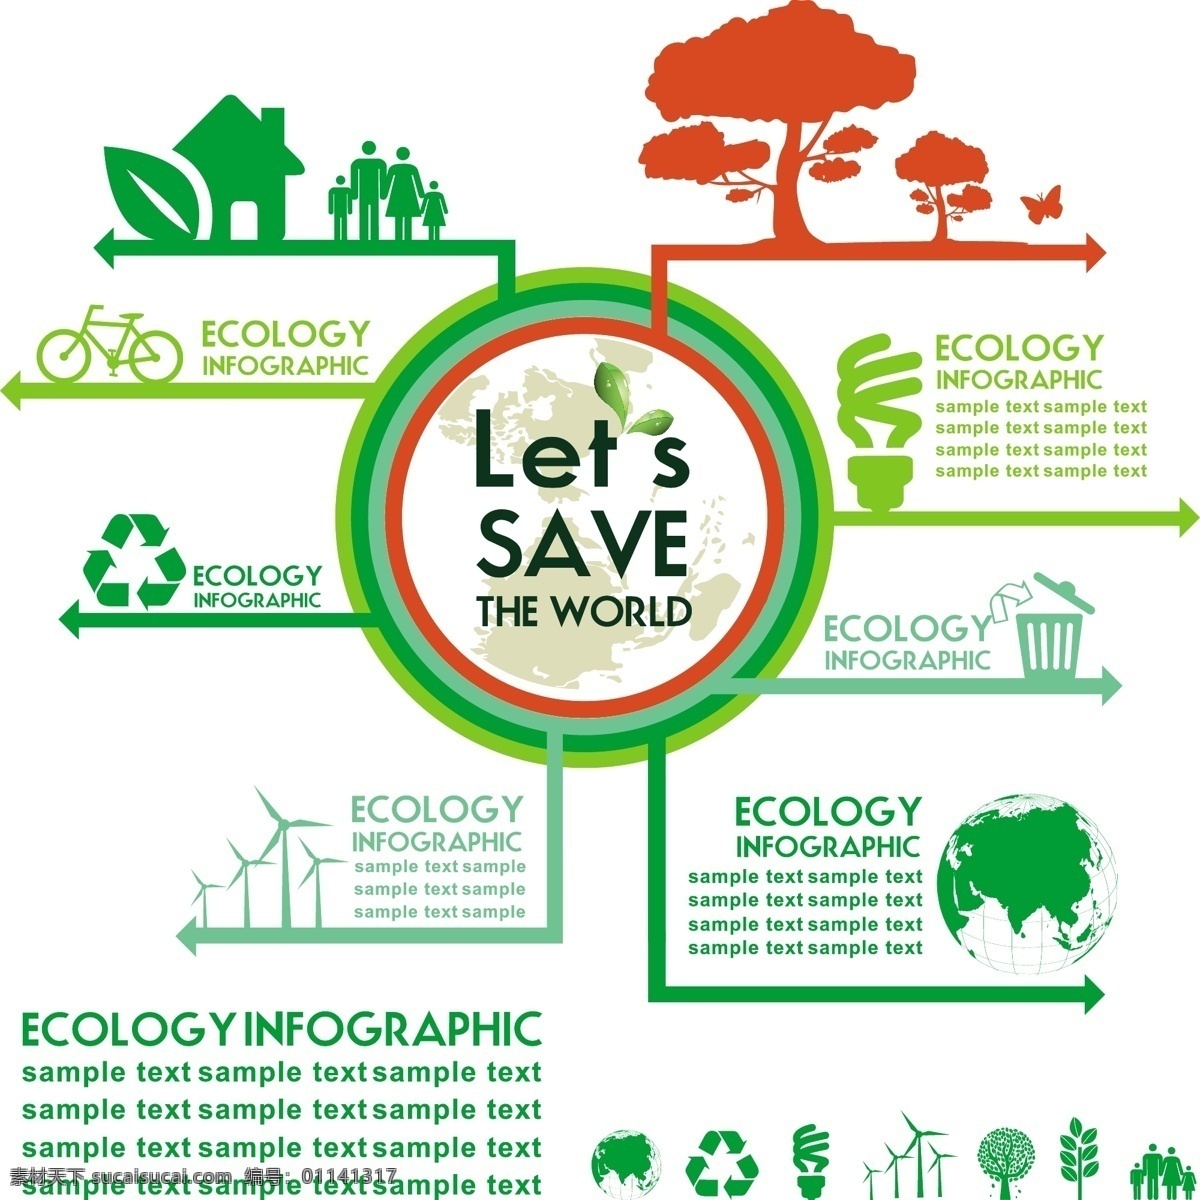 生态信息 环保 创意设计 eco 绿色 循环 能源 节能 低碳 生态 回收 环保标志 ppt素材 底纹背景 商务金融 商业插画 白色